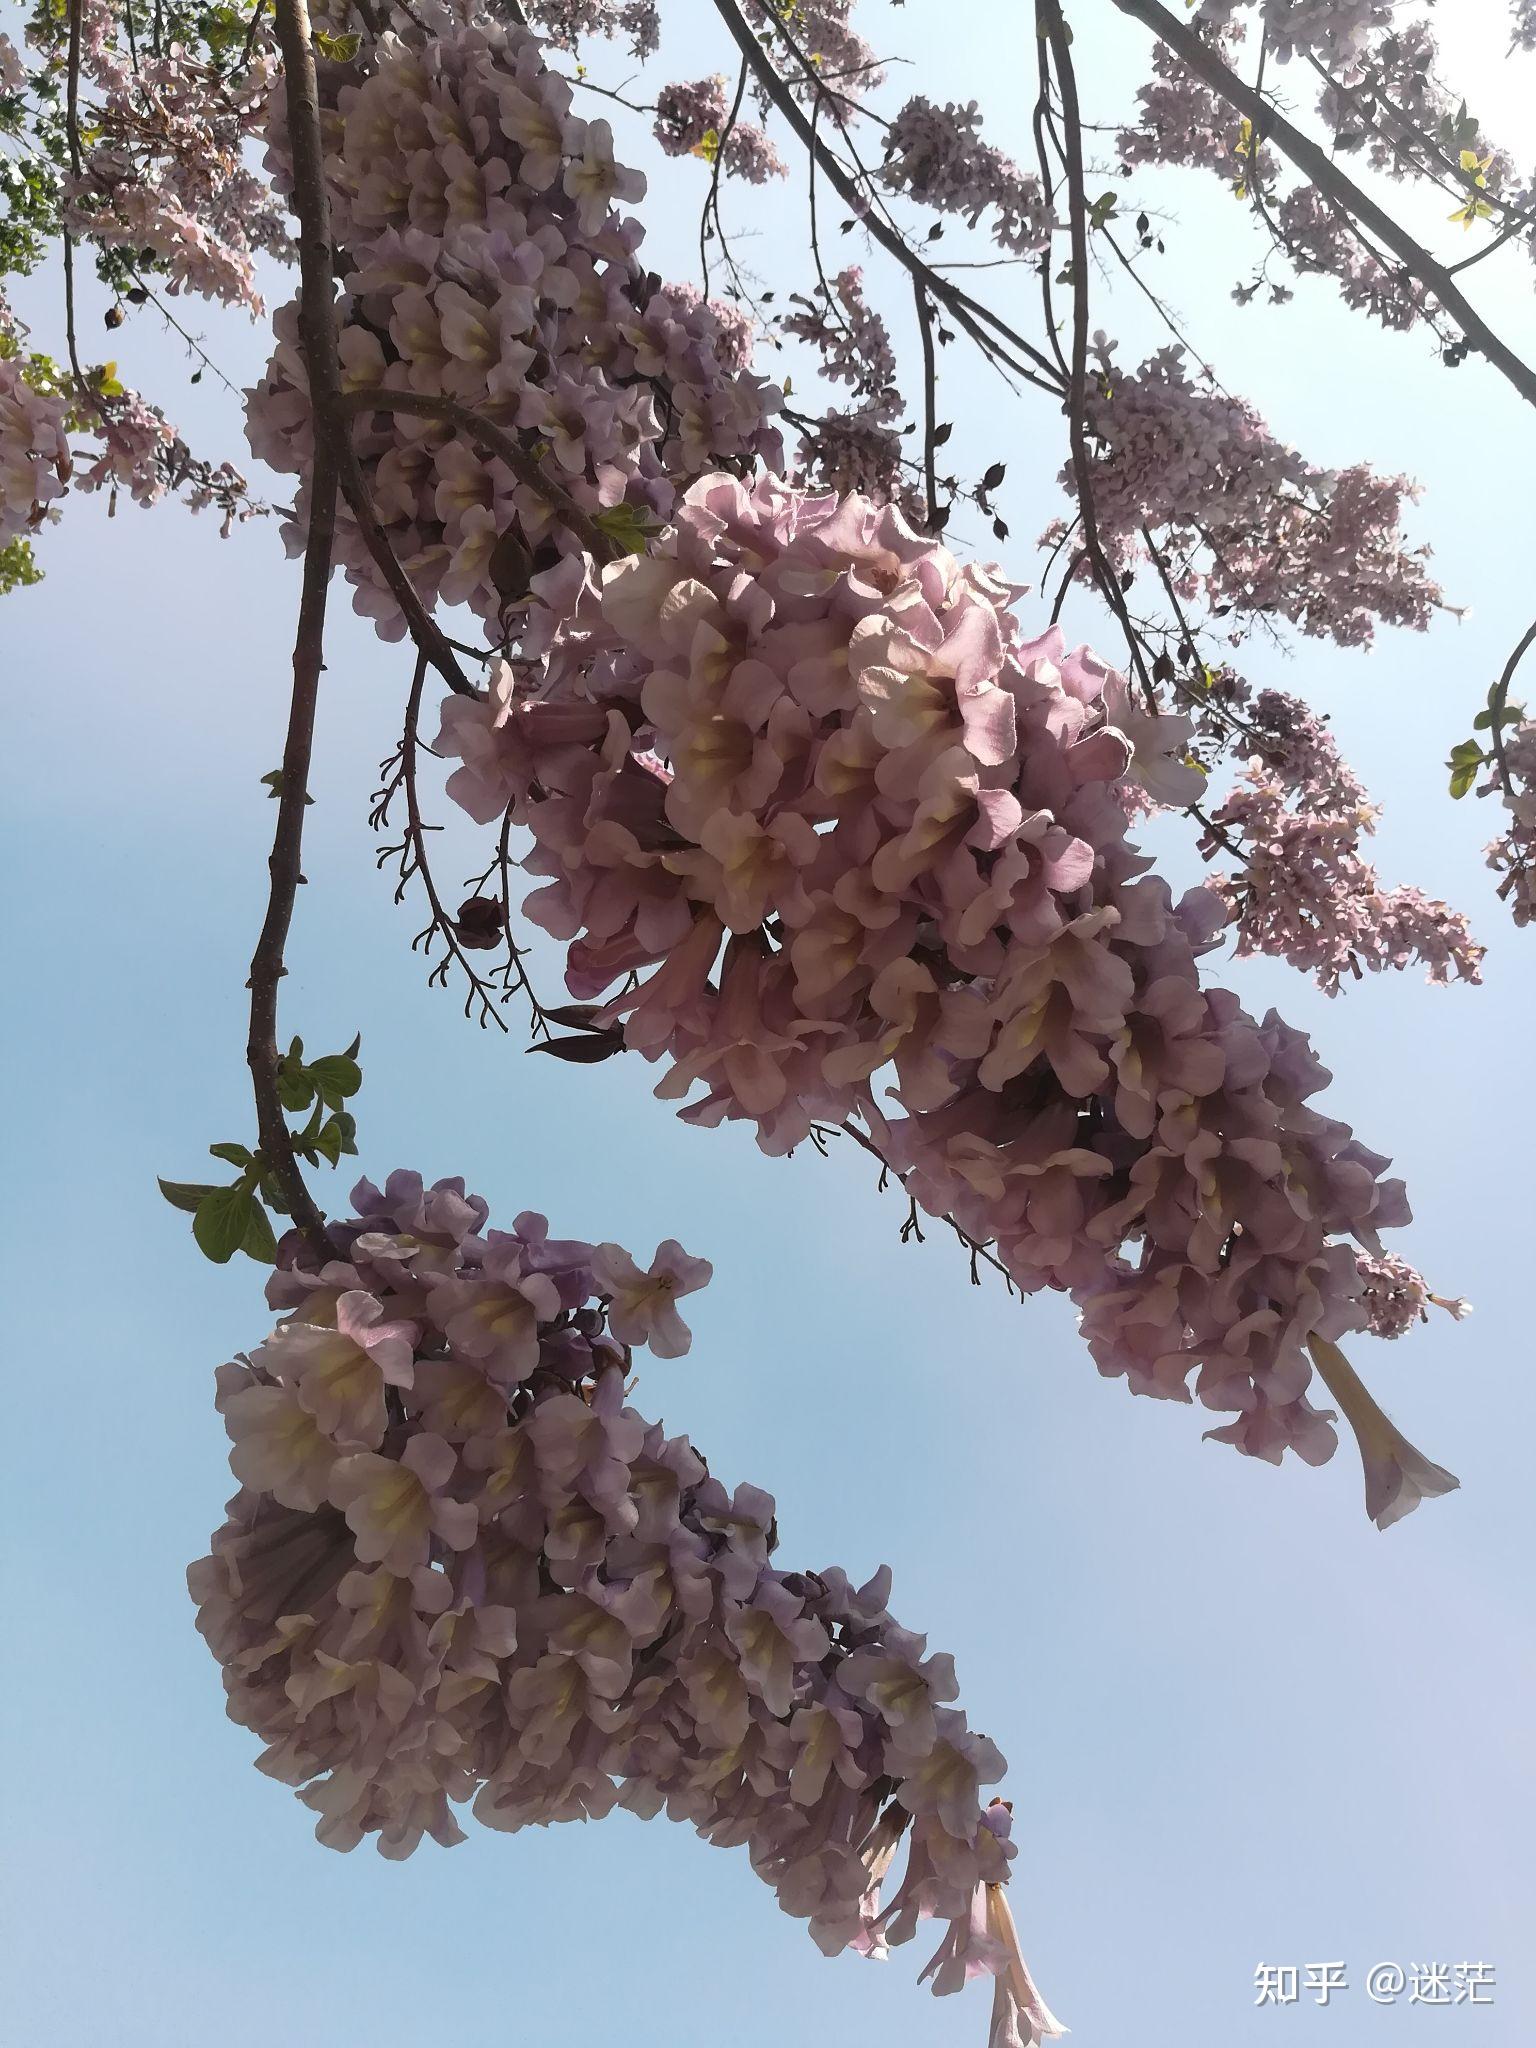 梧桐树春天的样子图片